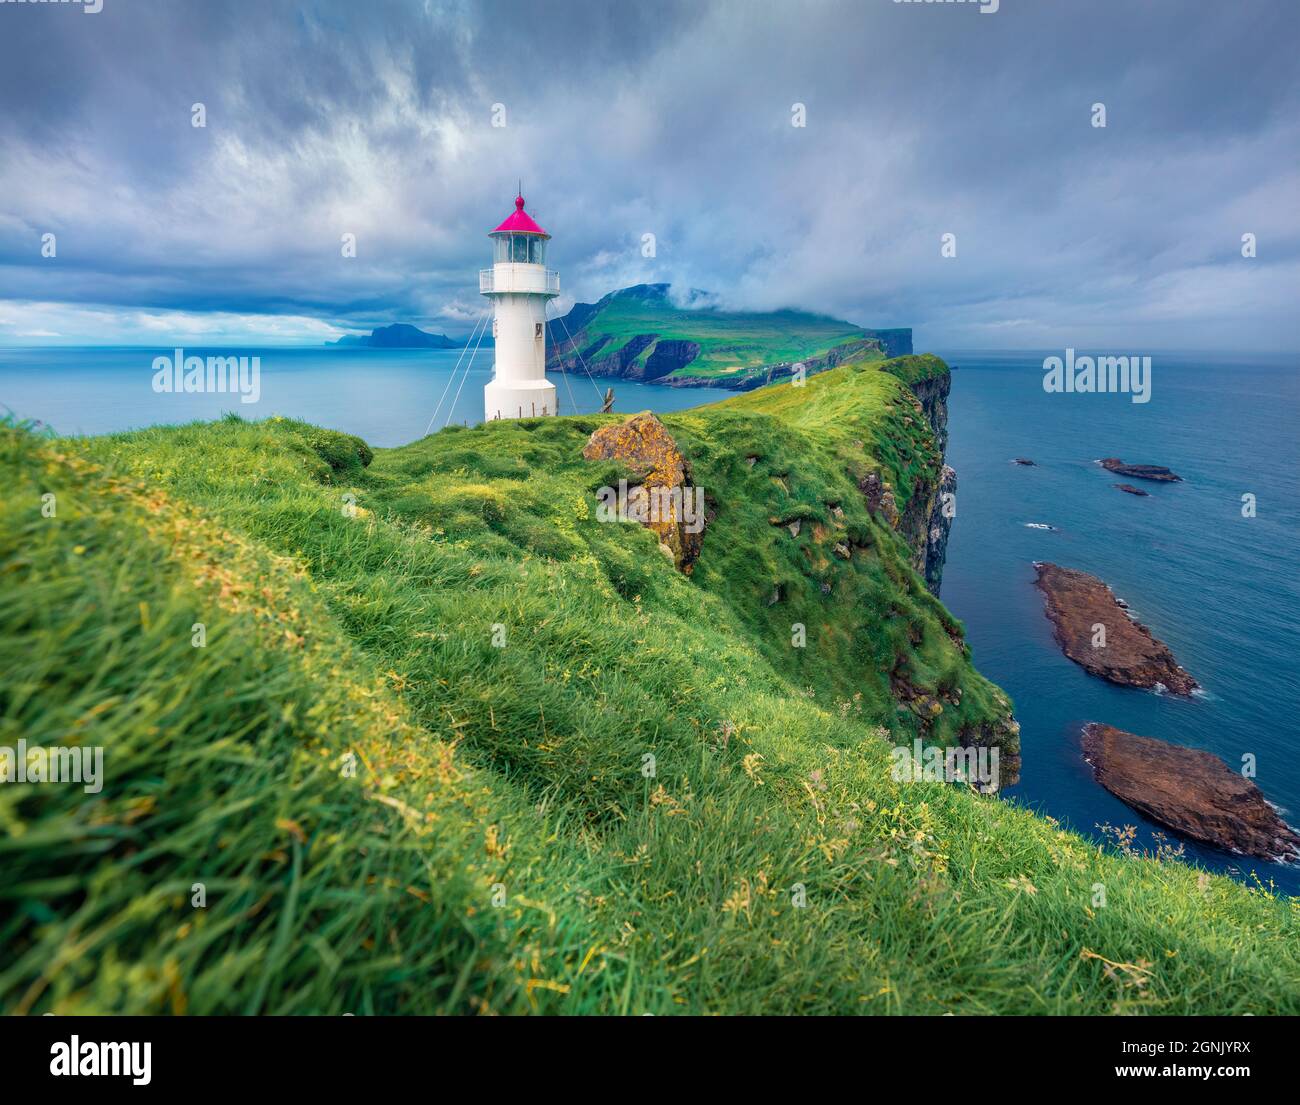 Landschaftsfotografie. Dramatische Sommeransicht des alten Leuchtturms auf Mykines Island. Malerische Morgenlandschaft der Färöer Inseln, Dänemark, Europa. Atlantik Stockfoto